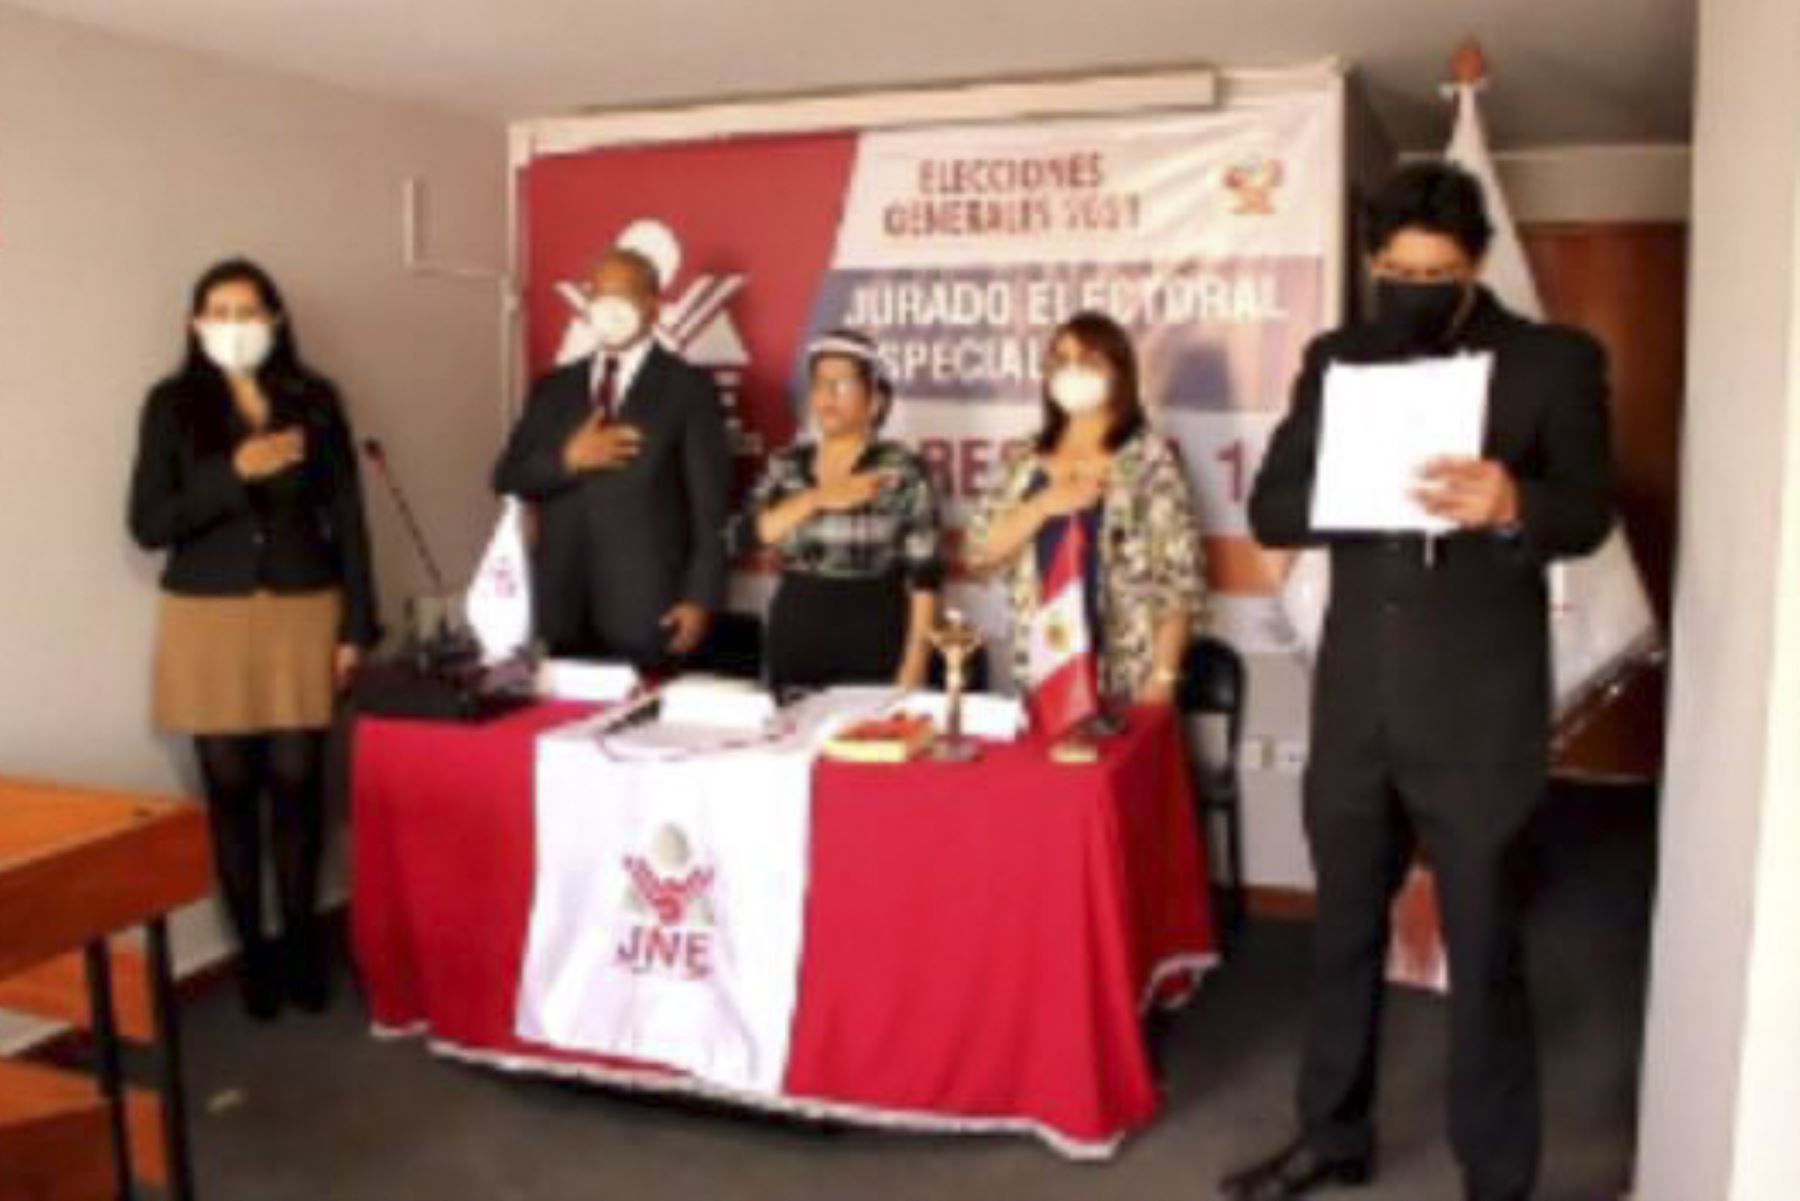 La ceremonia de juramentación de los miembros del JEE Arequipa se desarrolló cumpliendo los protocolos sanitarios por la pandemia del covid-19. Foto: ANDINA/Difusión